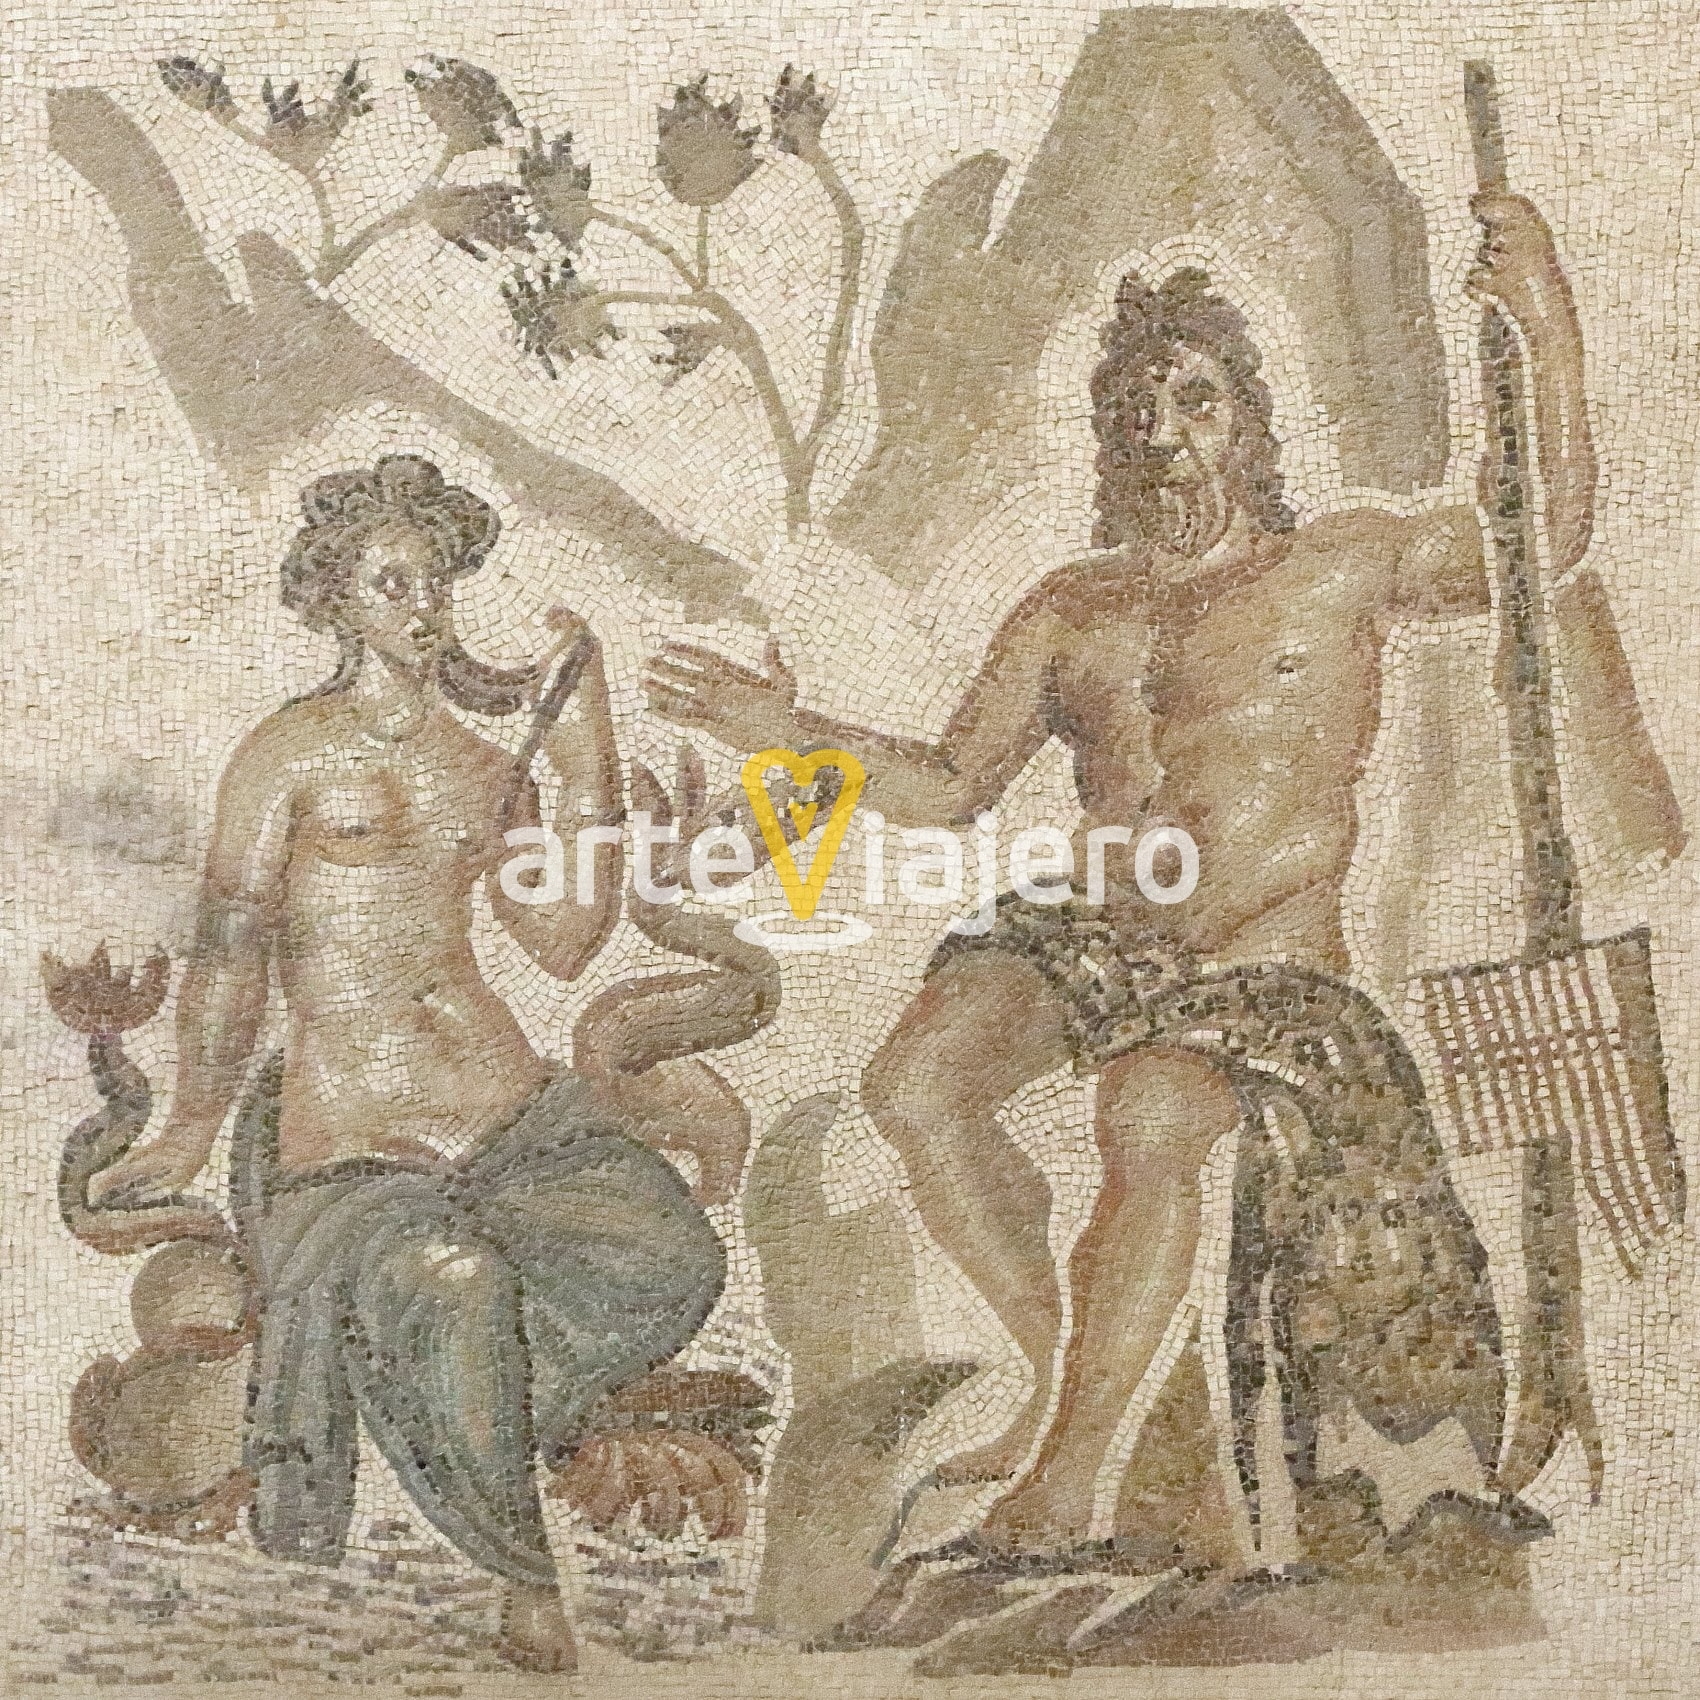 mosaico romano con polifemo y galatea